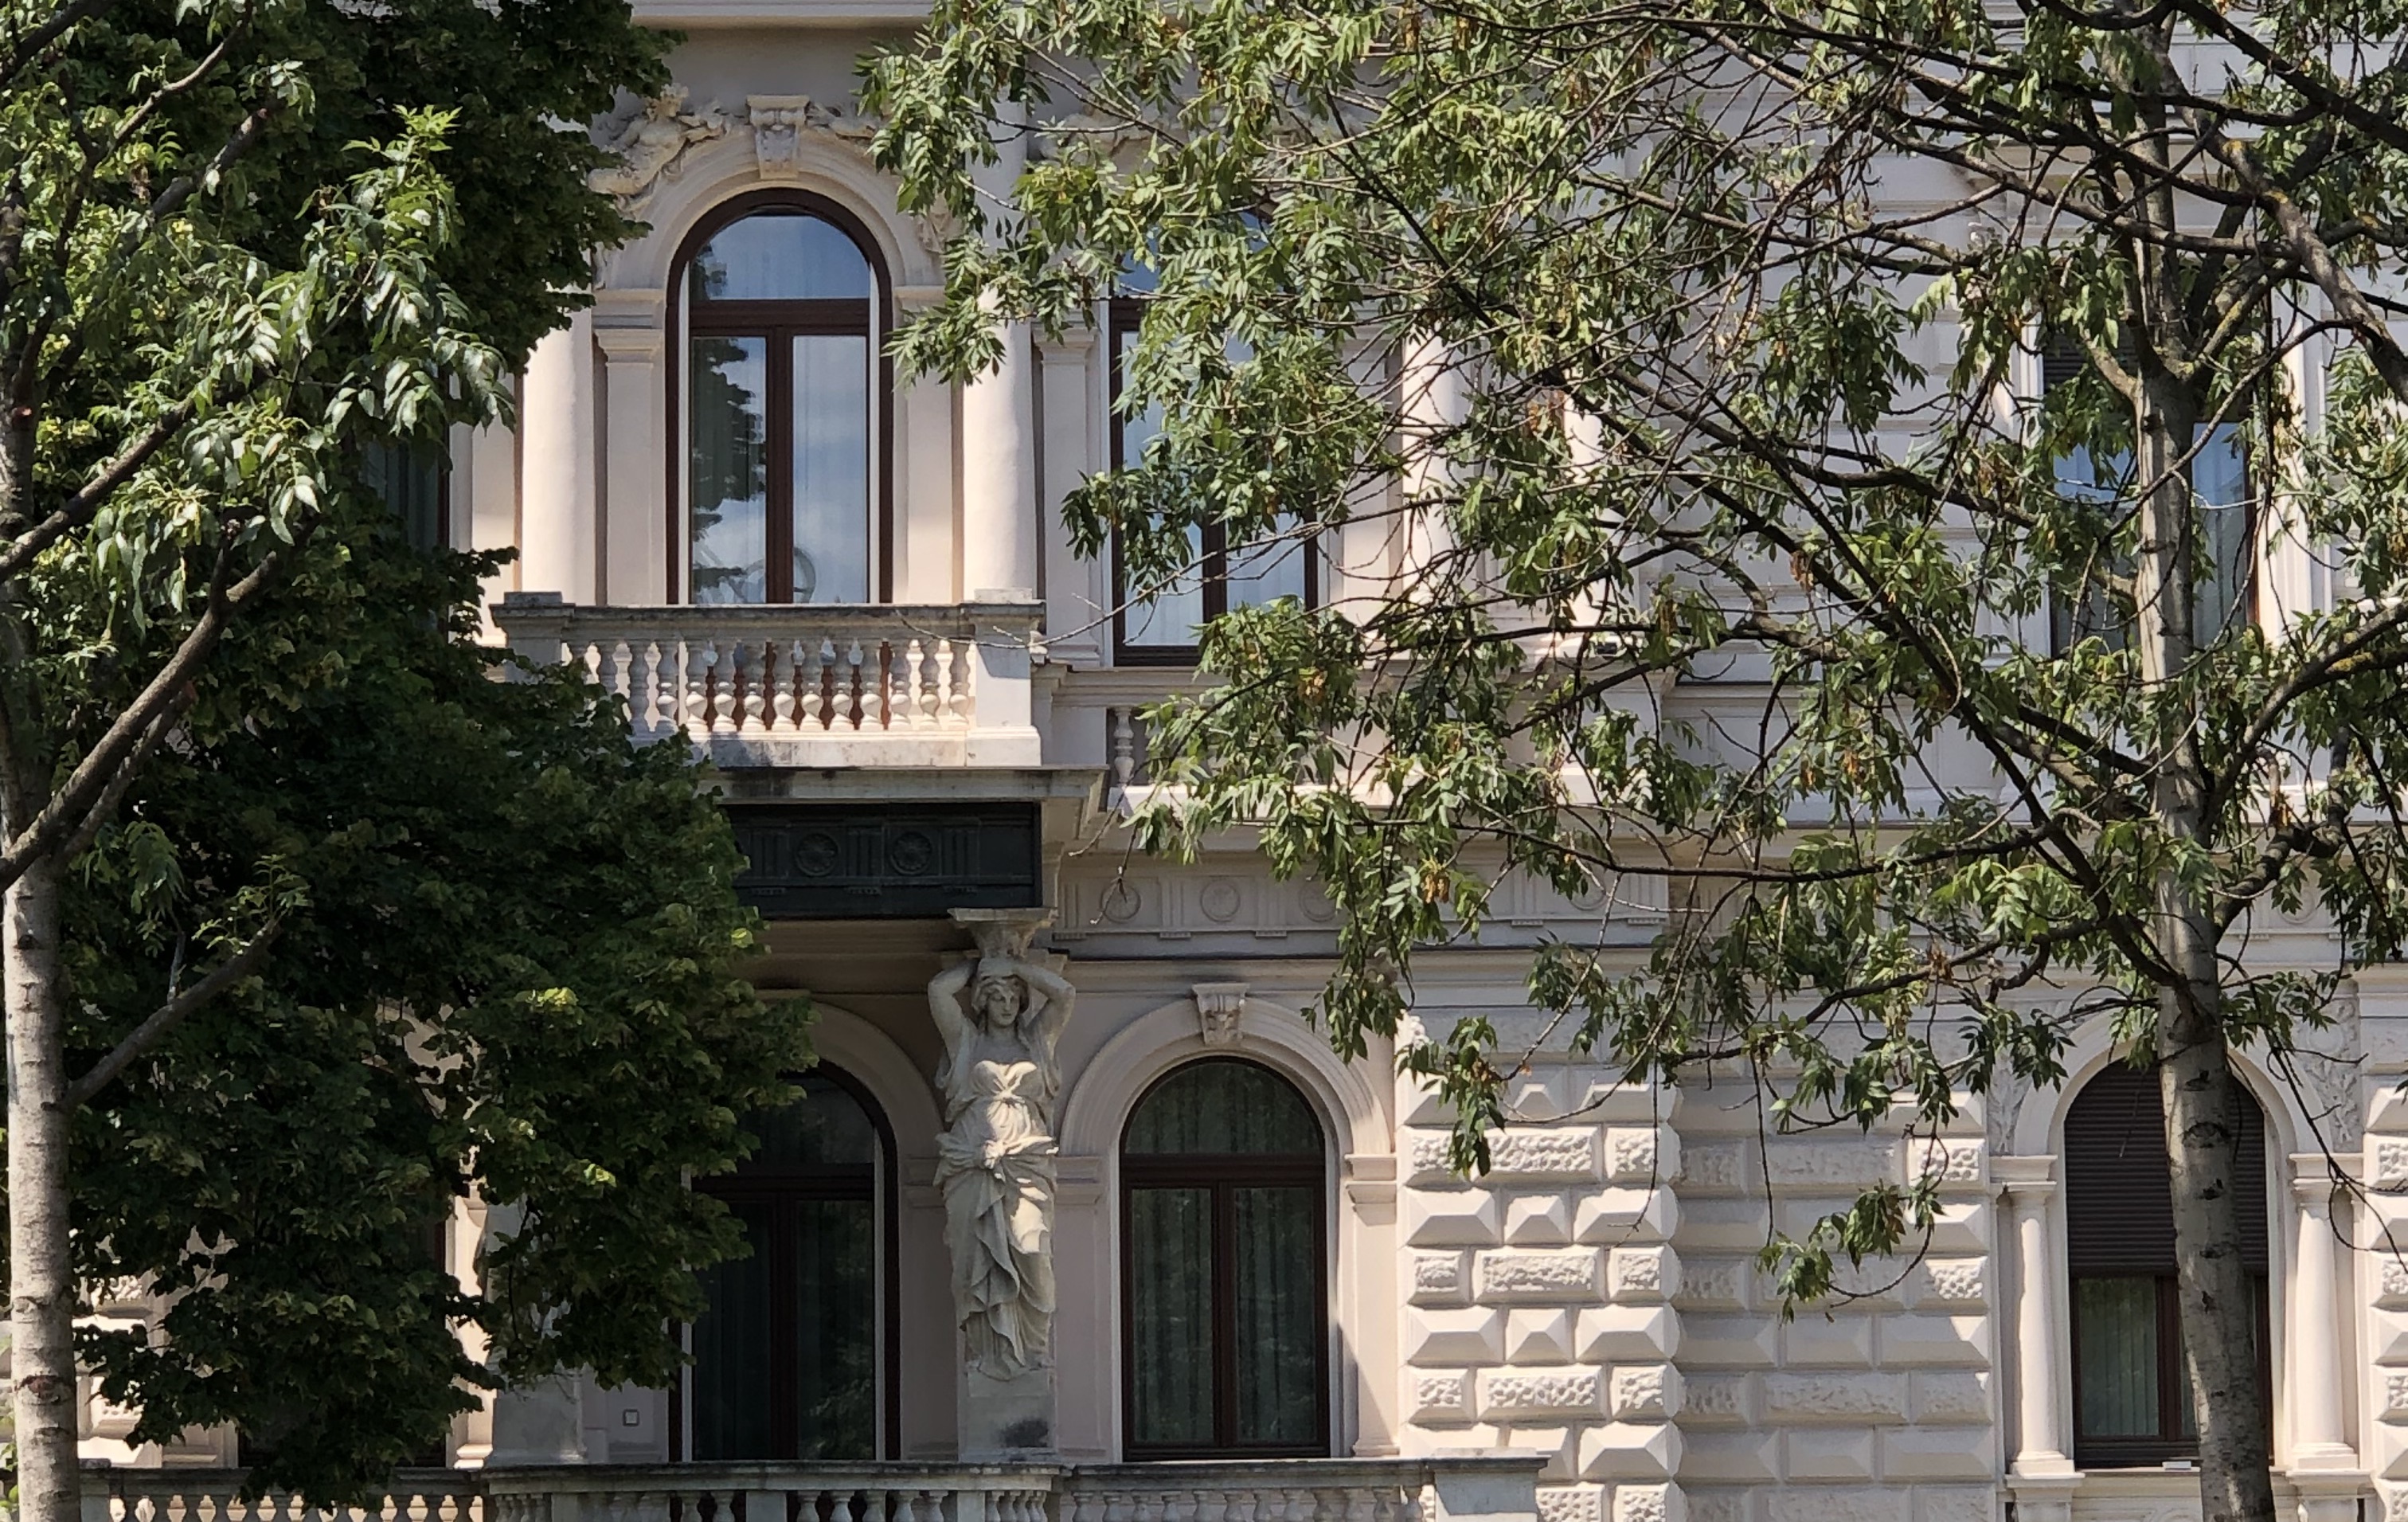 Jó Budapestre jönni diplomataként – Megmutatjuk a kedvenc nagykövetségeinket és rezidenciáinkat